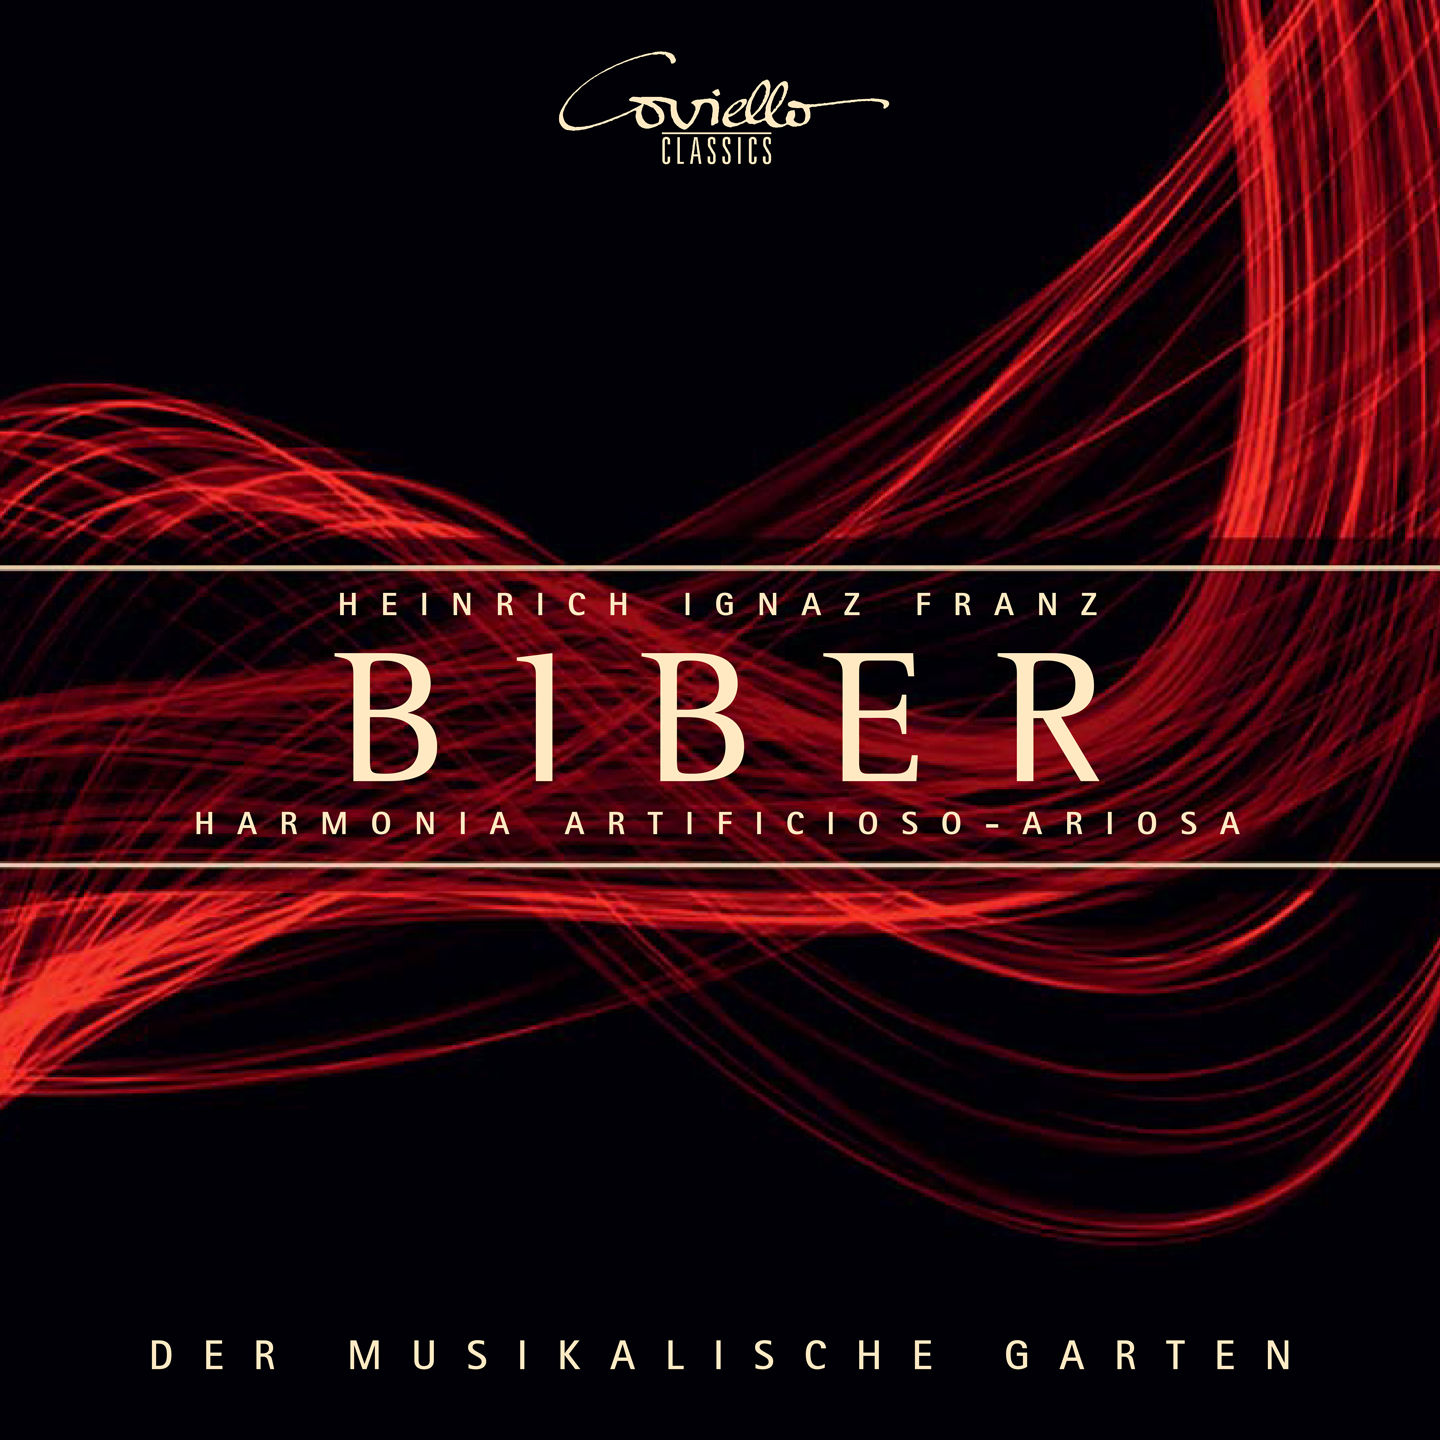 Der Musikalische Garten – Biber Harmonia artificioso-ariosa (2020) [FLAC 24bit/96kHz]